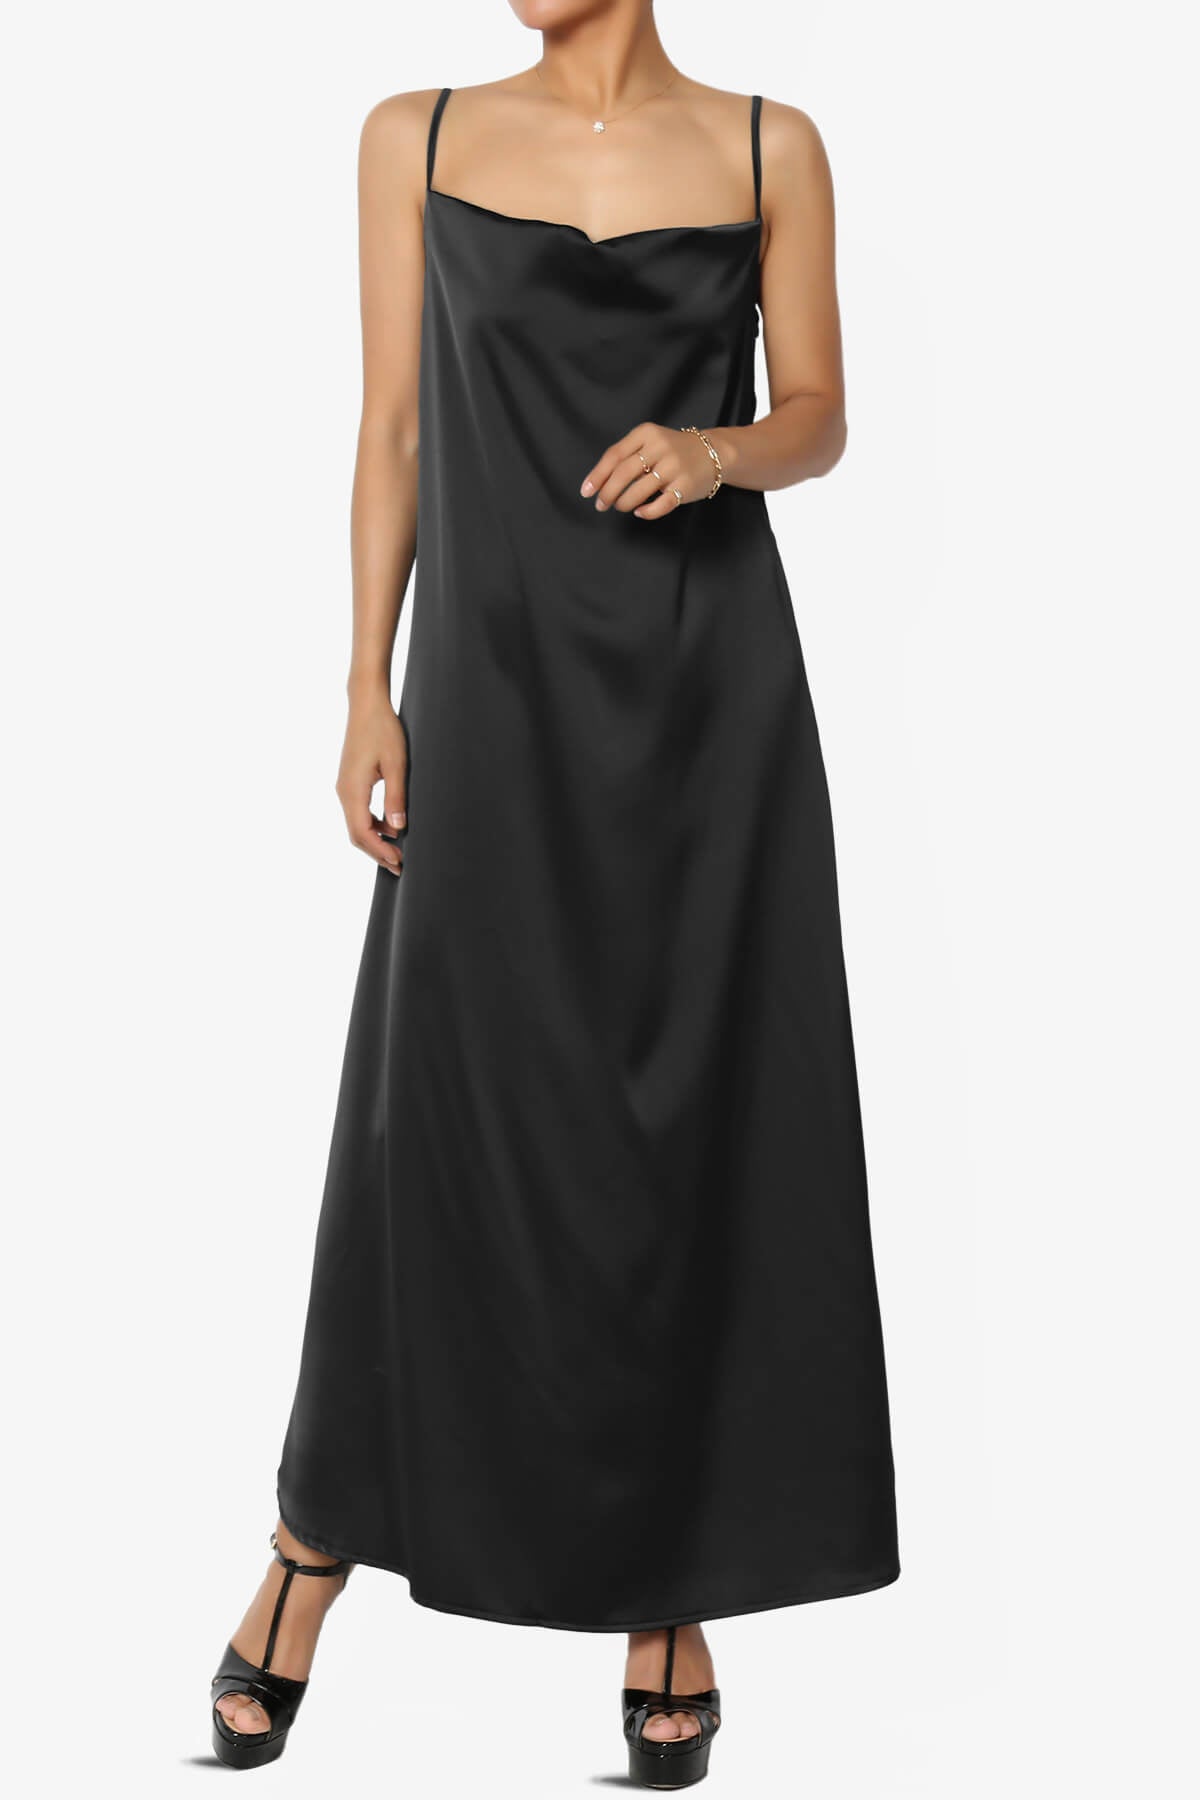 Berkleigh Cowl Neck Satin Slip Long Dress BLACK_6